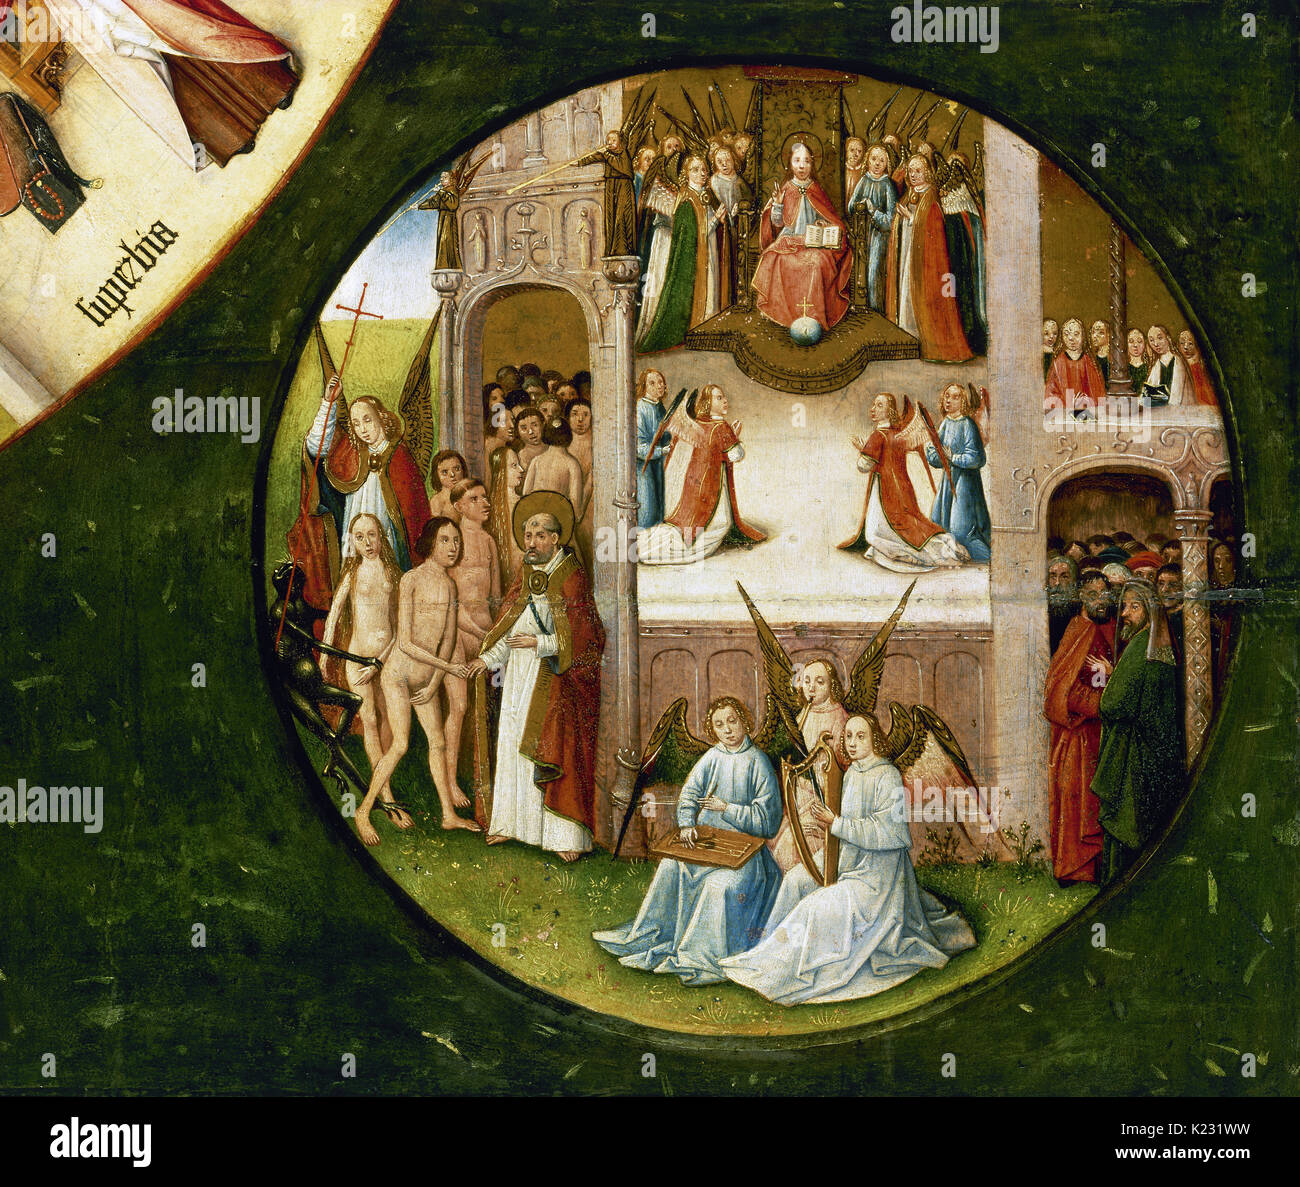 Hieronymus Bosch (ca. 1450-1516). Niederländische Maler. Tabelle der sieben Todsünden und die vier letzten Dinge, 1505-1510. Ruhm oder Himmel (eines der vier letzten Dinge). Prado Museum. Madrid. Spanien. Stockfoto